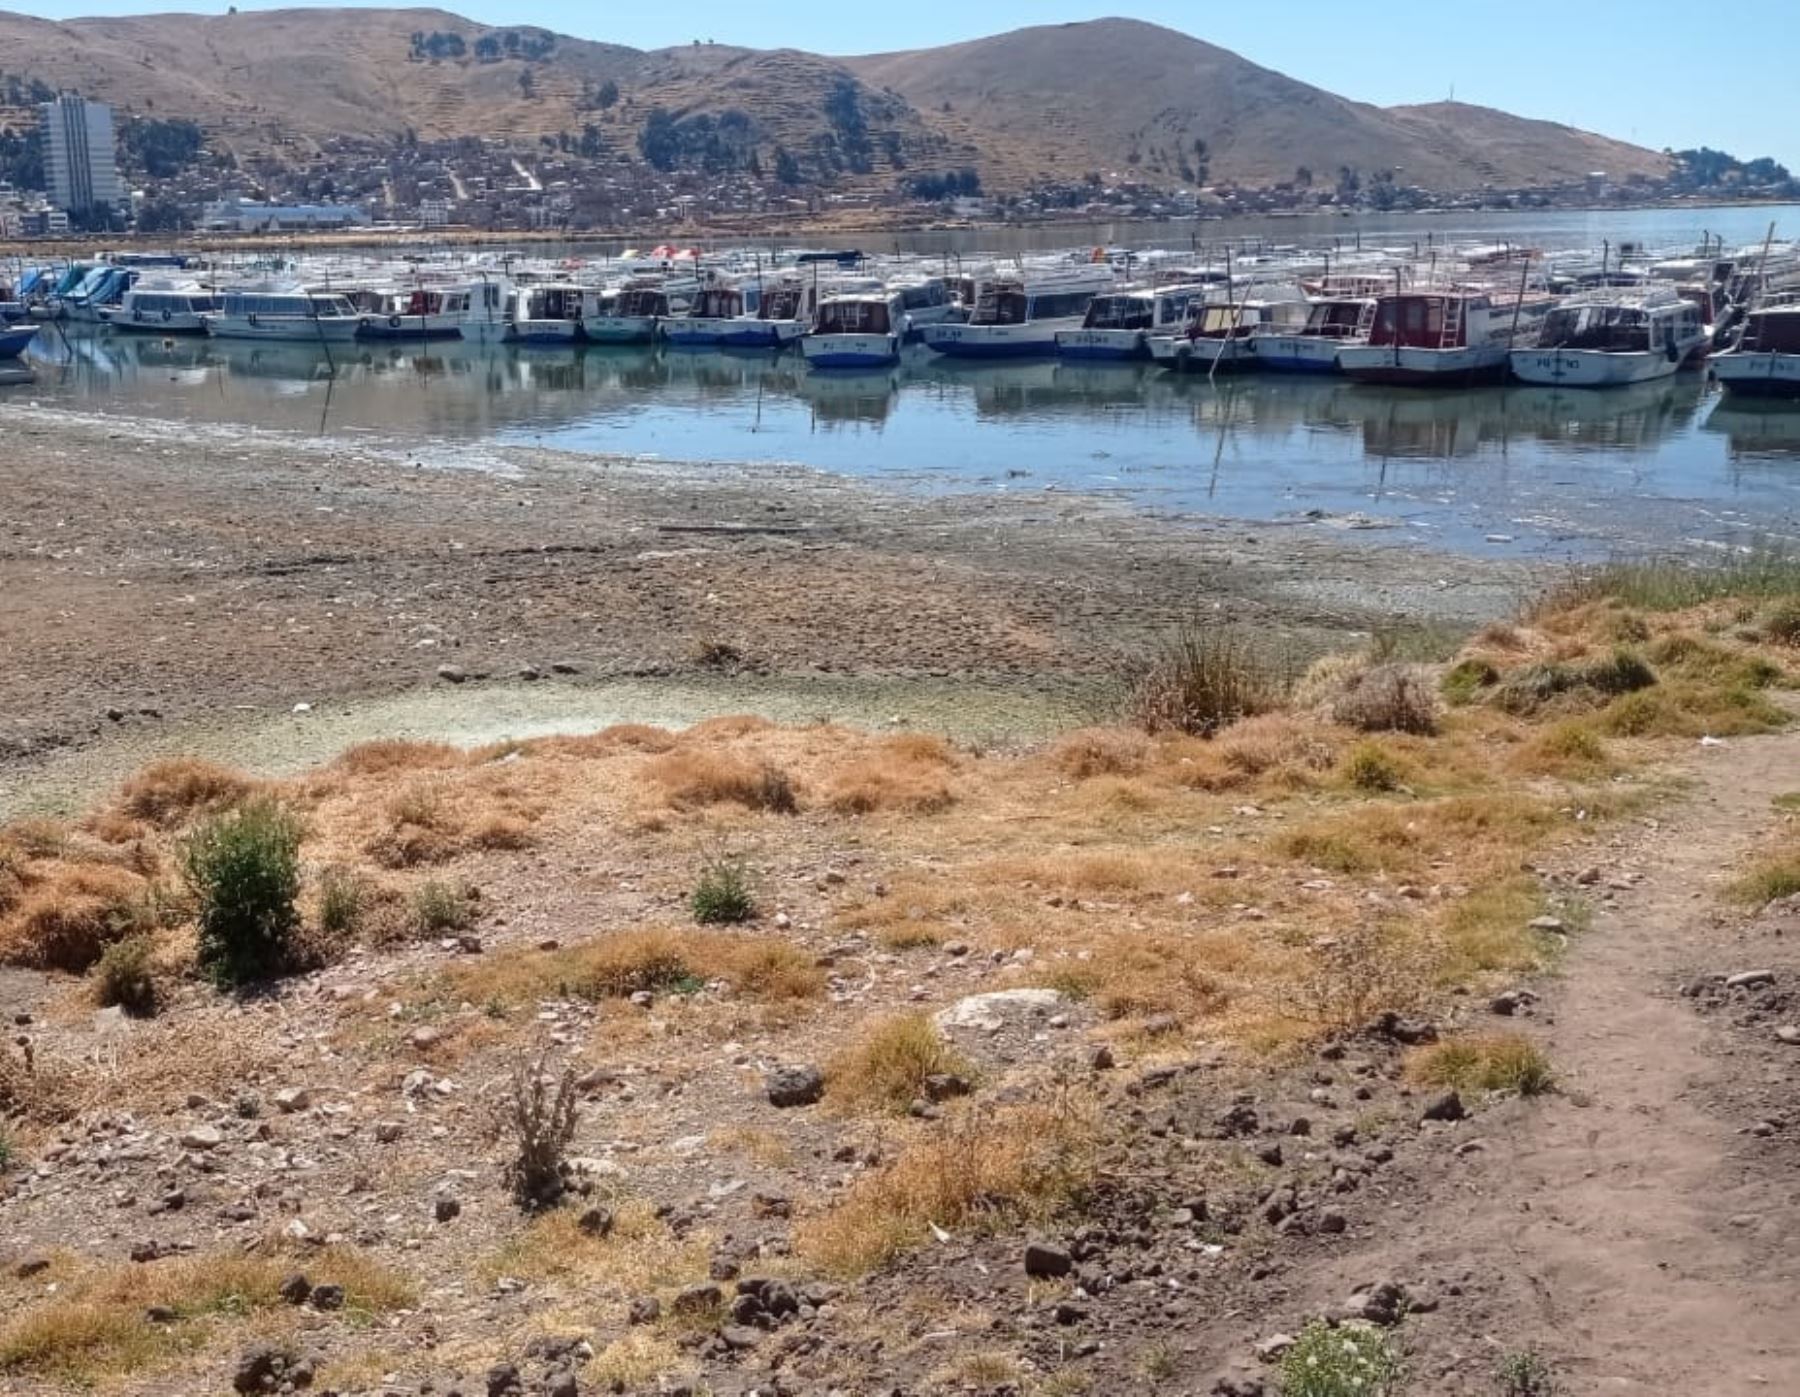 El lago Titicaca presenta un significativo descenso de su nivel a causa del déficit hídrico que soporta Puno por ausencia de lluvias.